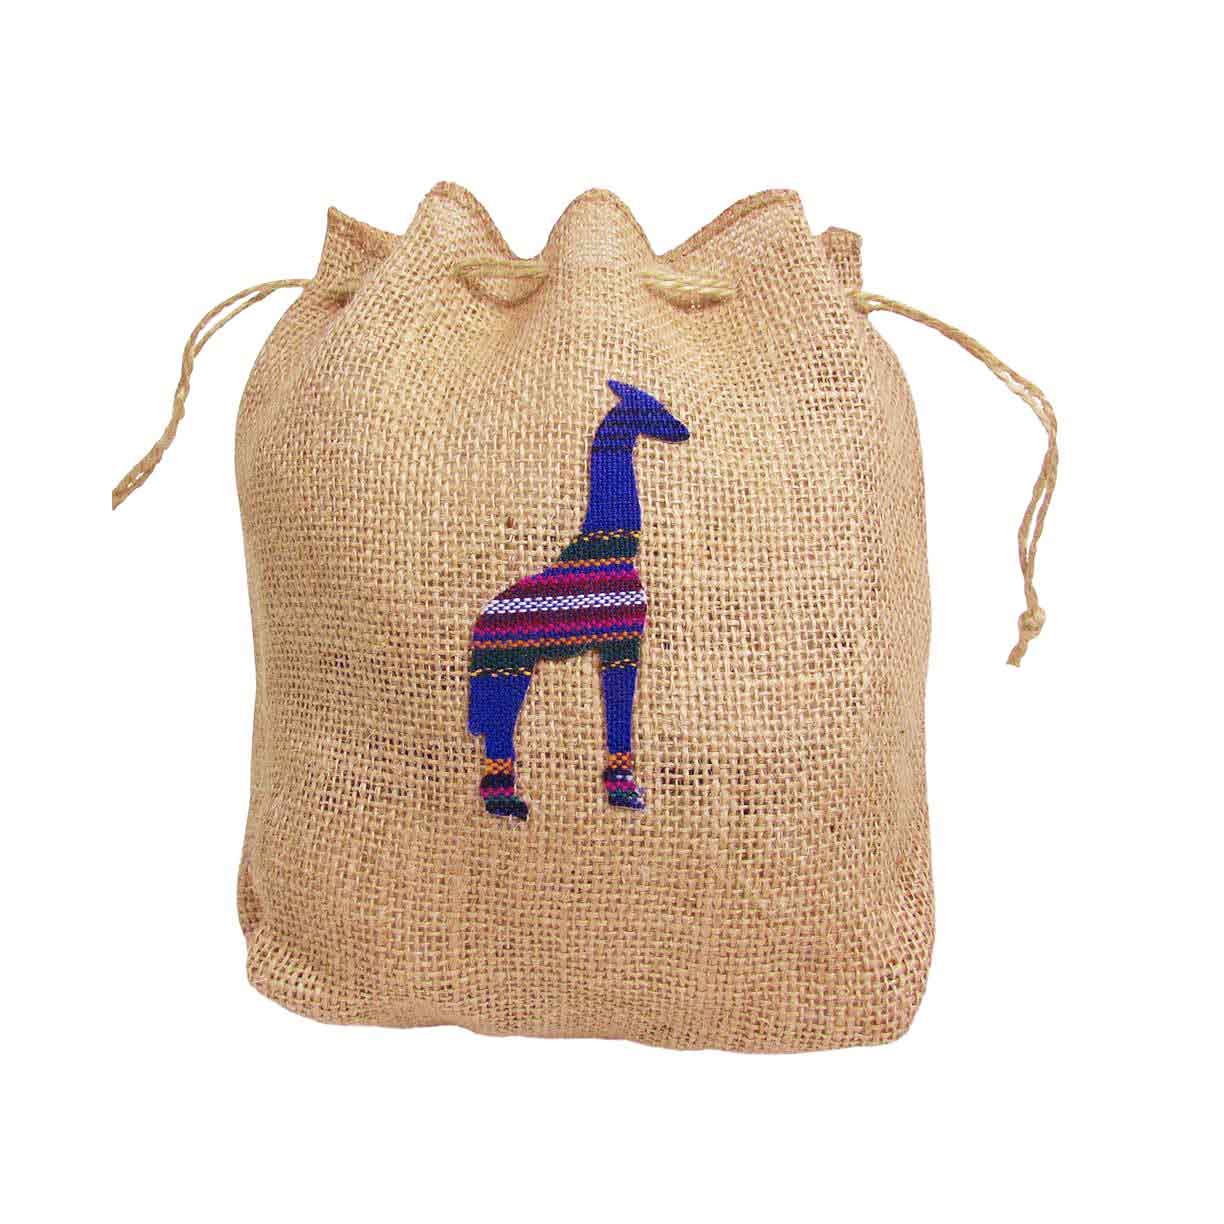 Giraffe Hemp Drawstring Bag